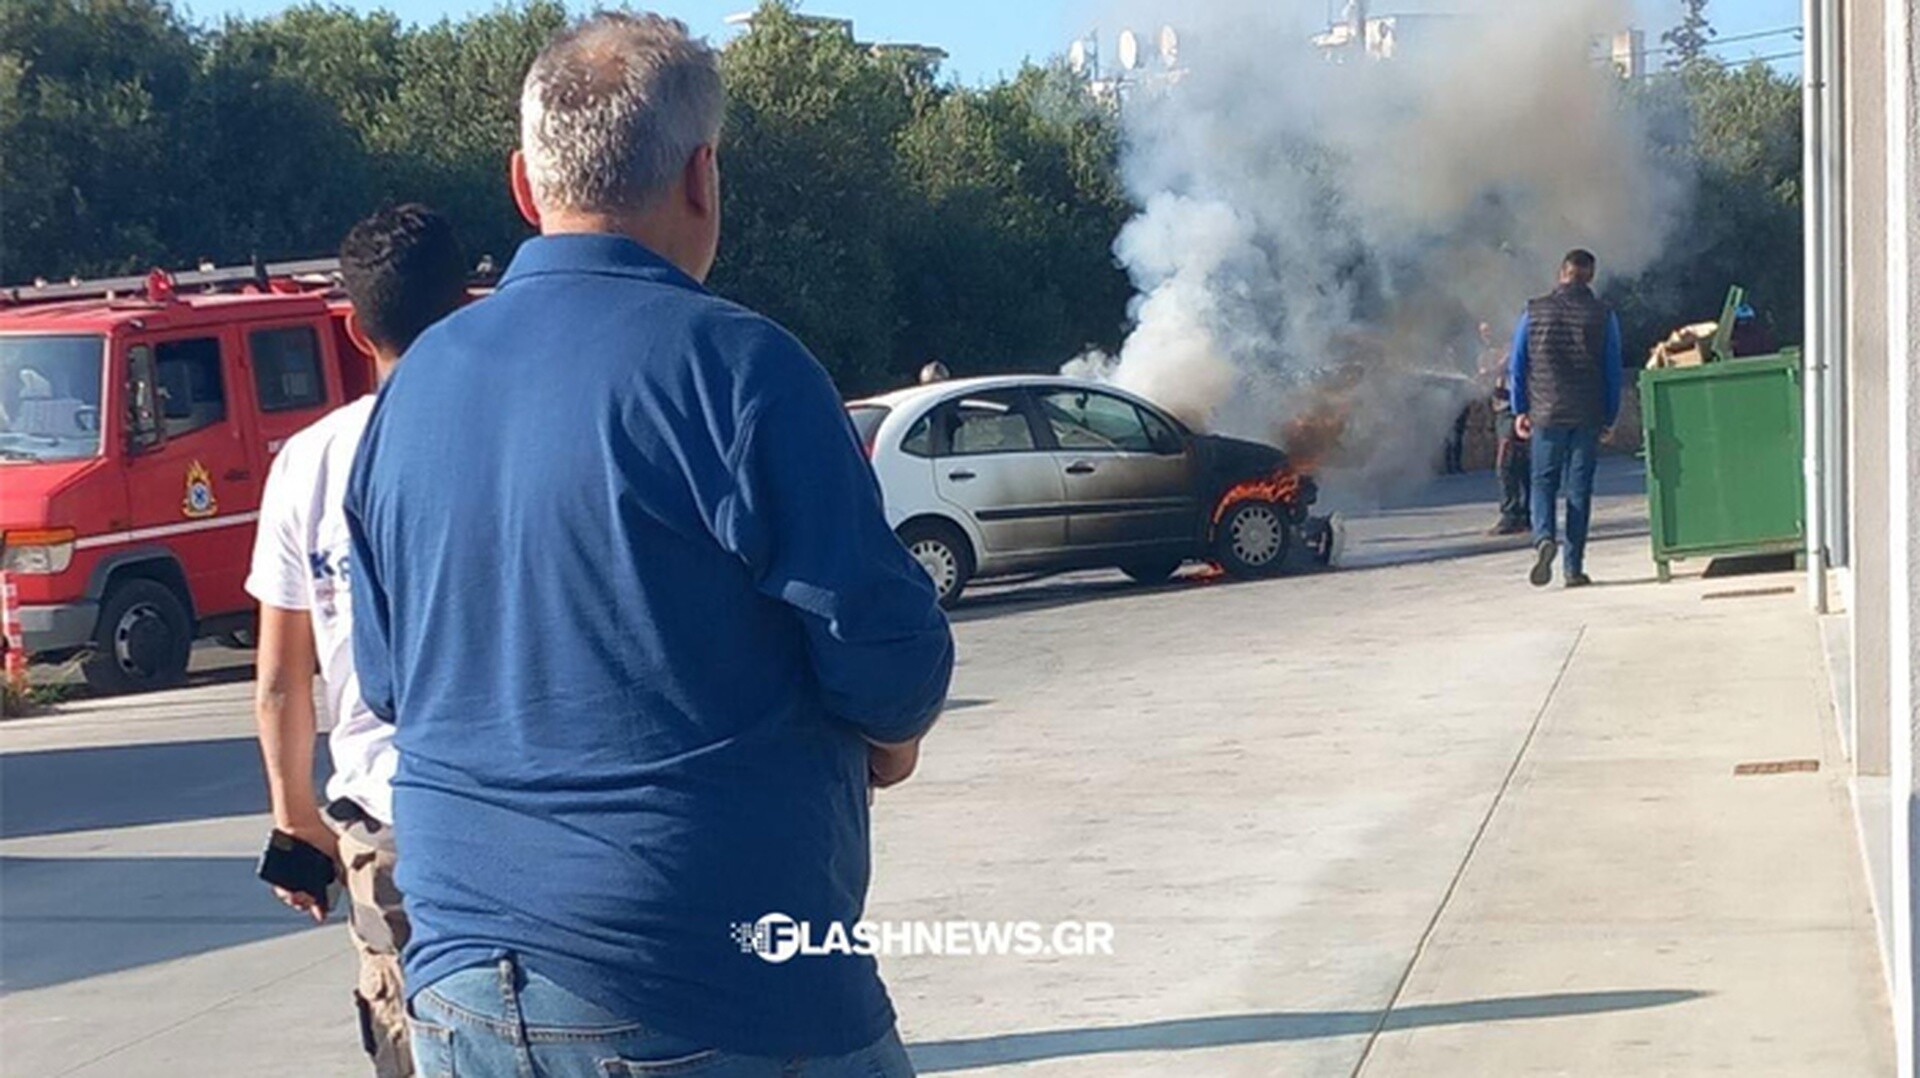 Χανιά: Αυτοκίνητο πήρε φωτιά εν κινήσει - Στο όχημα επέβαινε οικογένεια